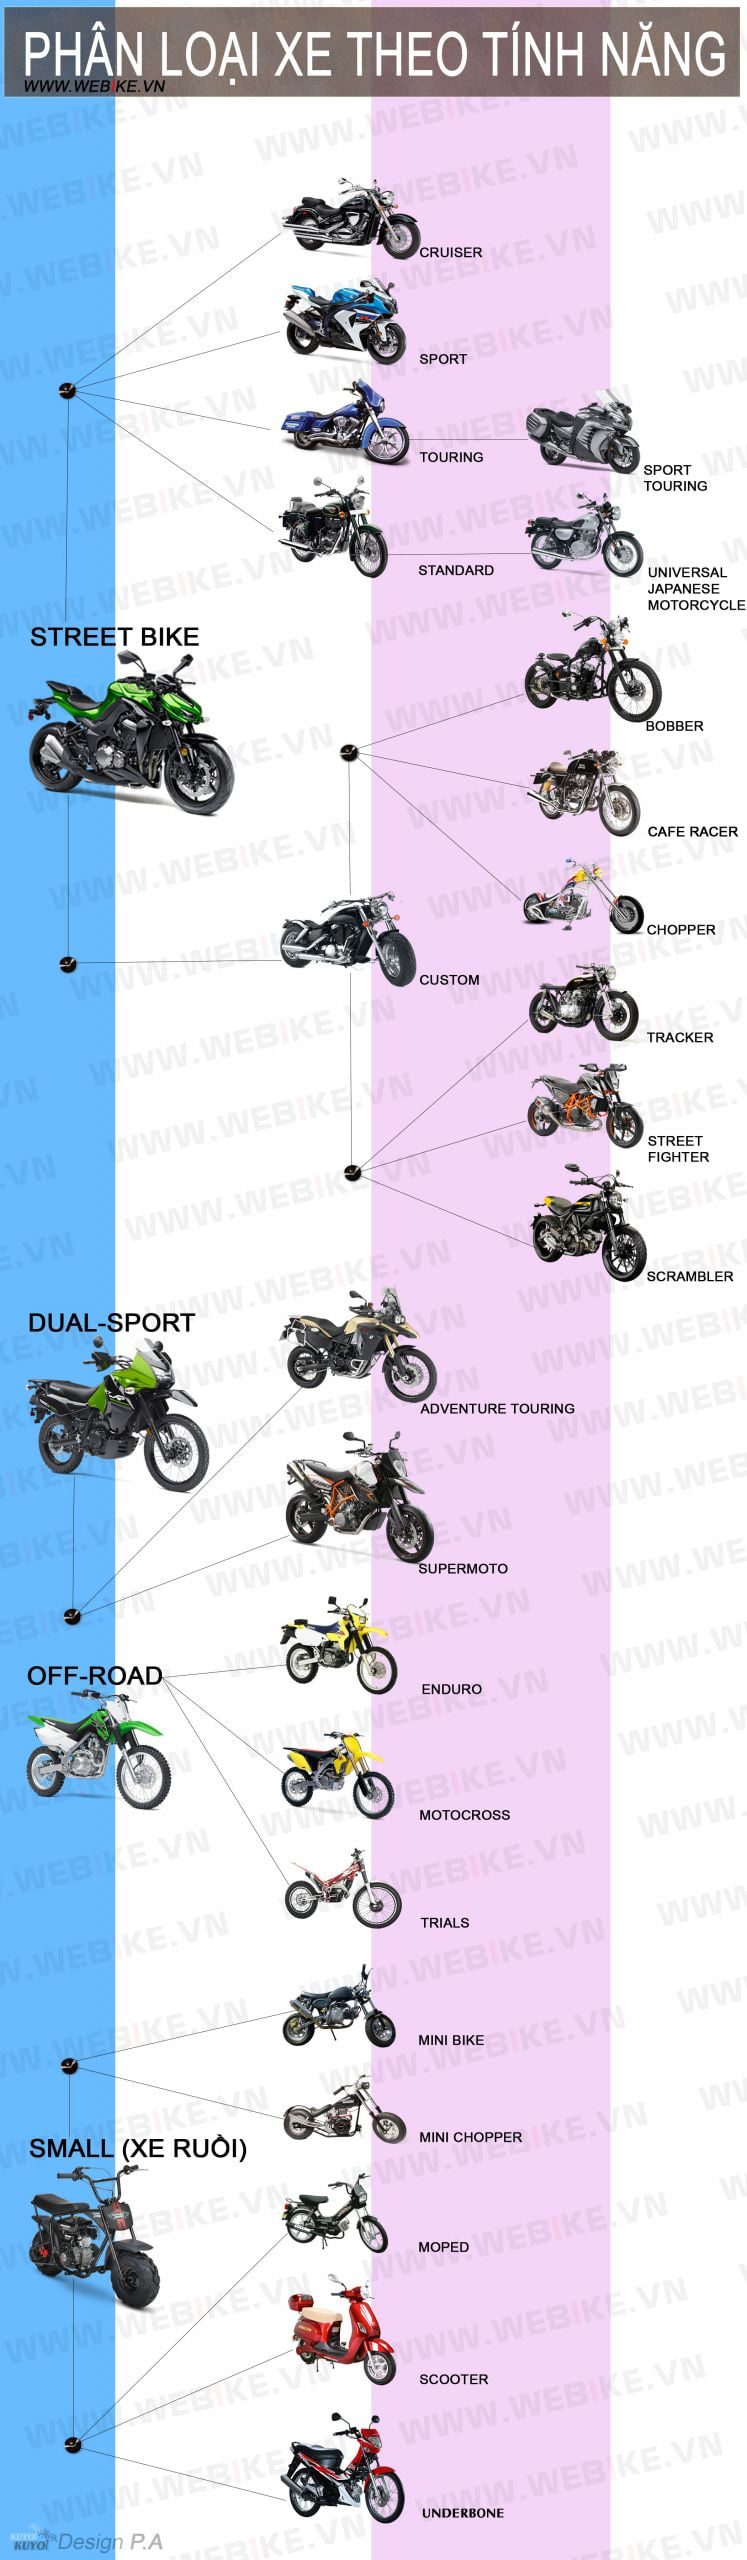 Phân loại các loại xe mô tô, xe máy tại thị trường Việt Nam 128